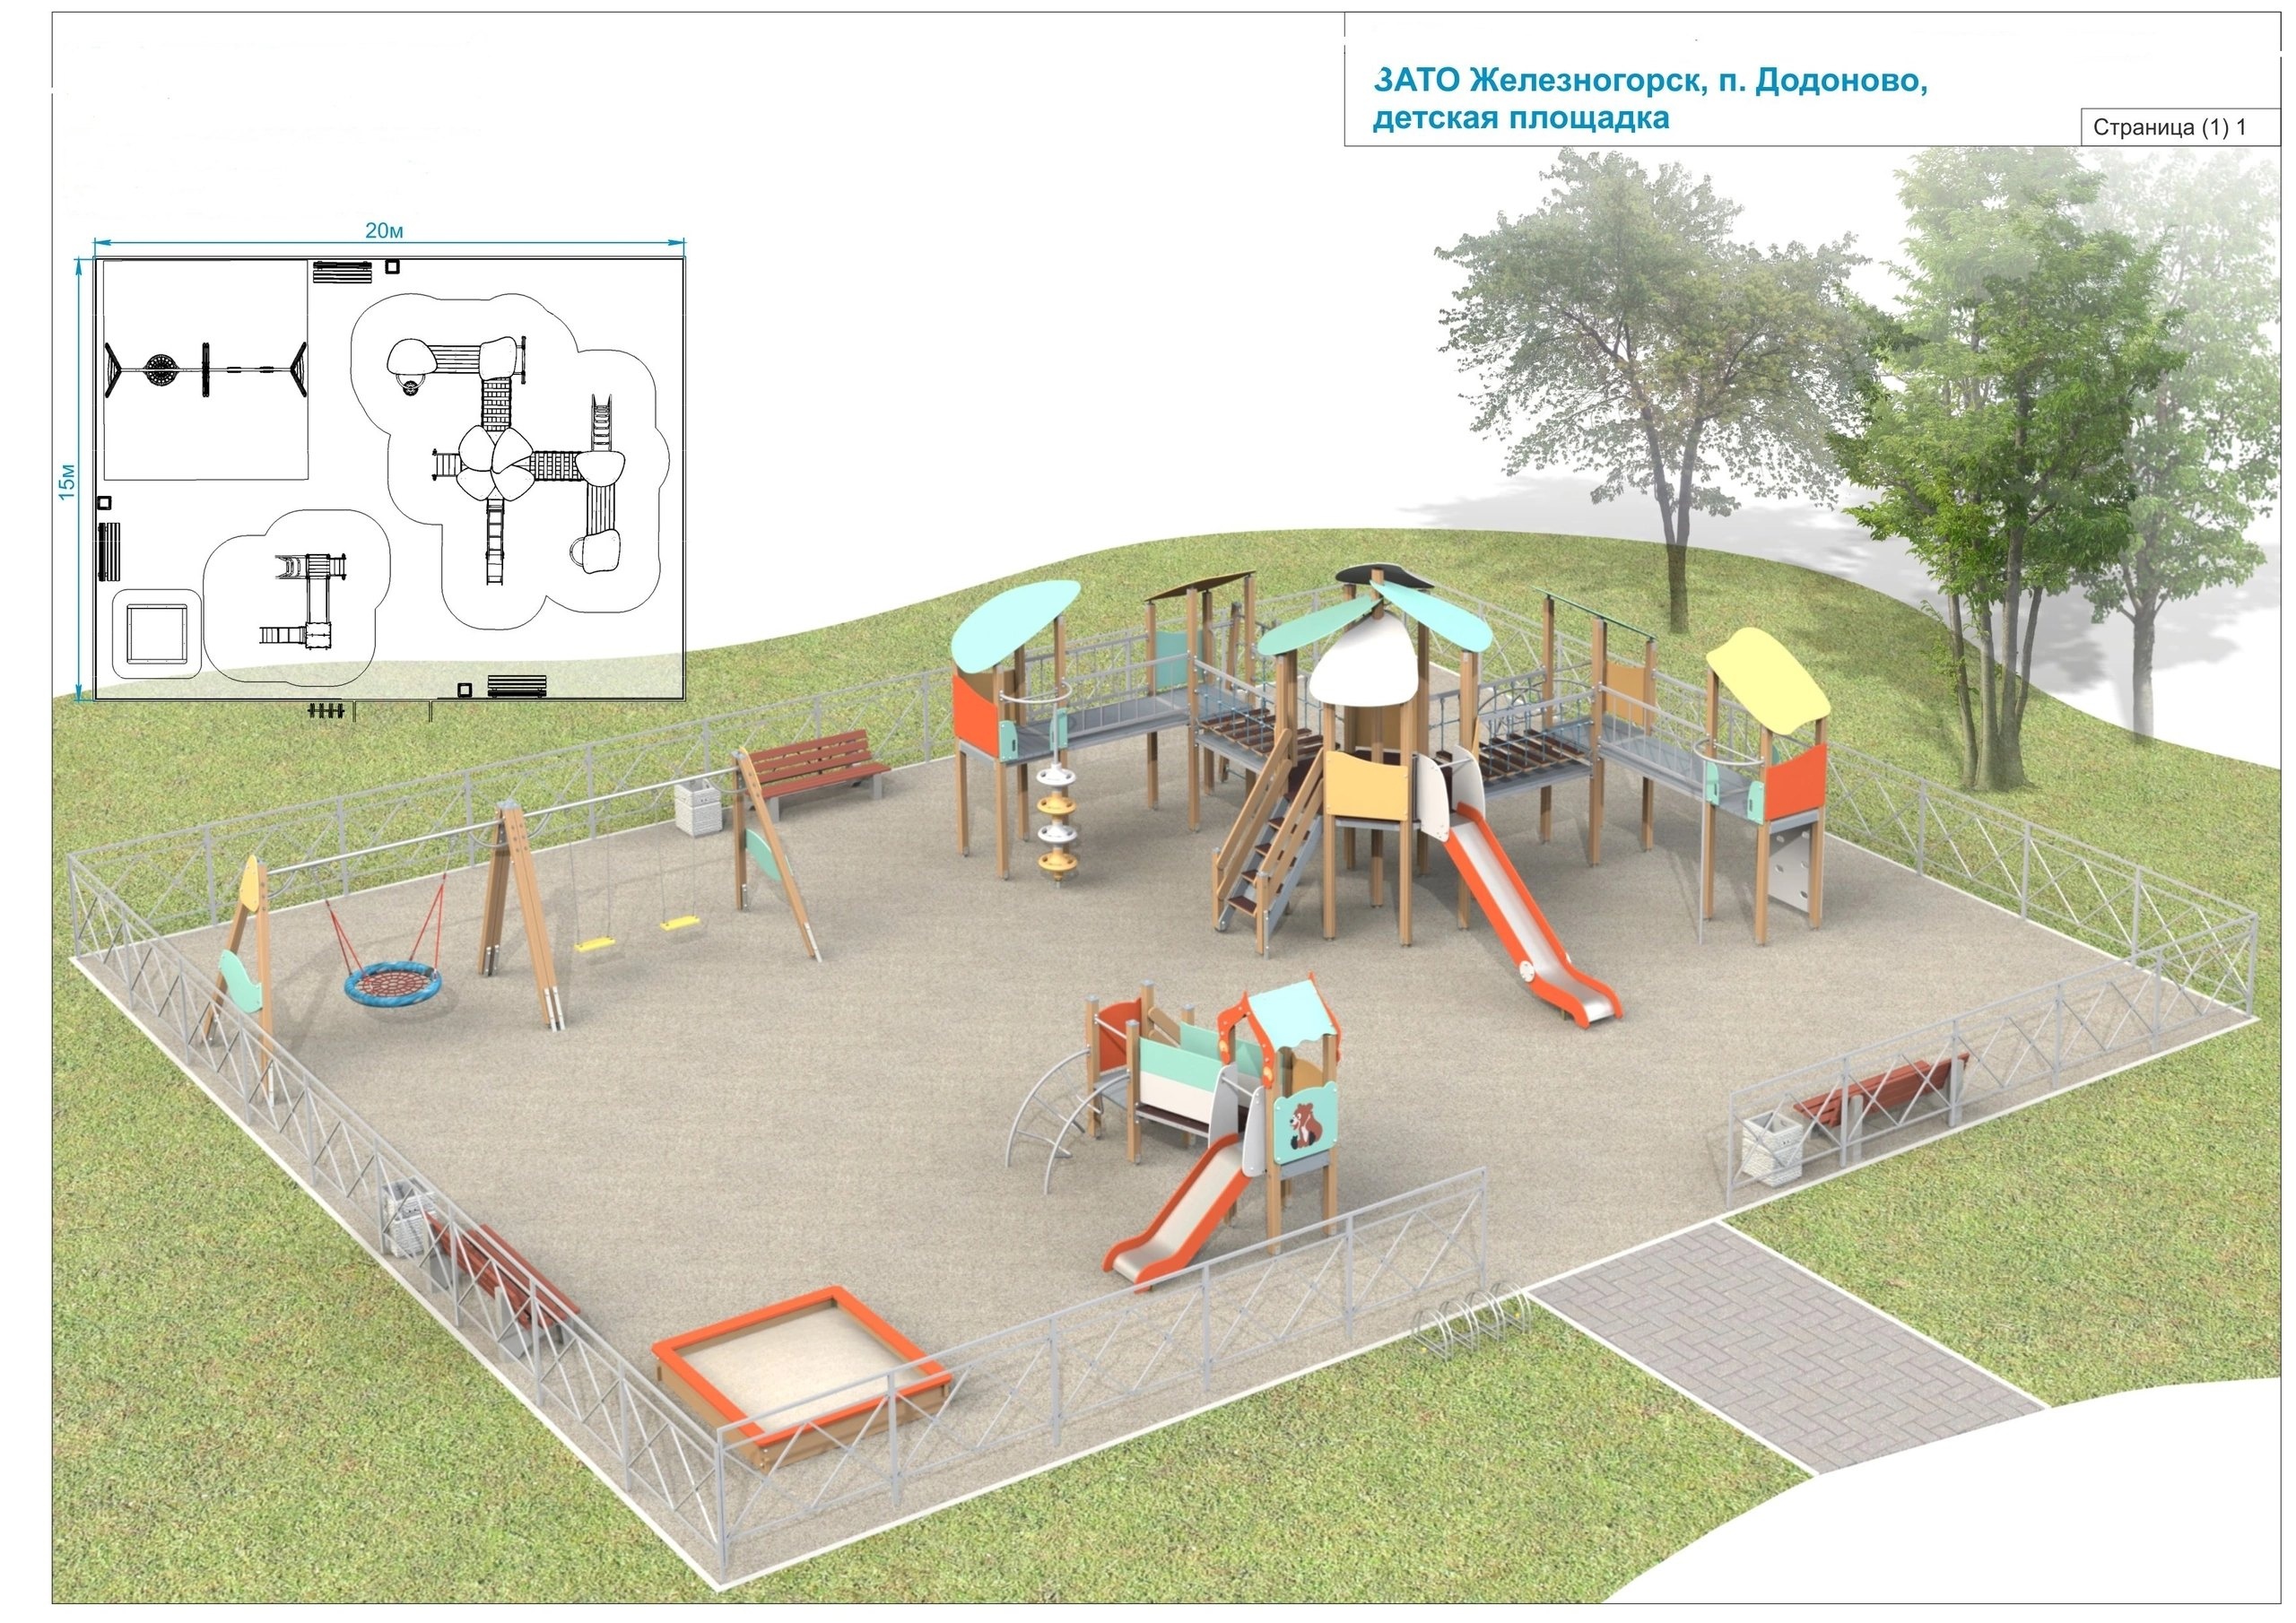 «Инициативное бюджетирование» - благодаря этой программе поддержки, в посёлке Додоново скоро появится детская площадка!